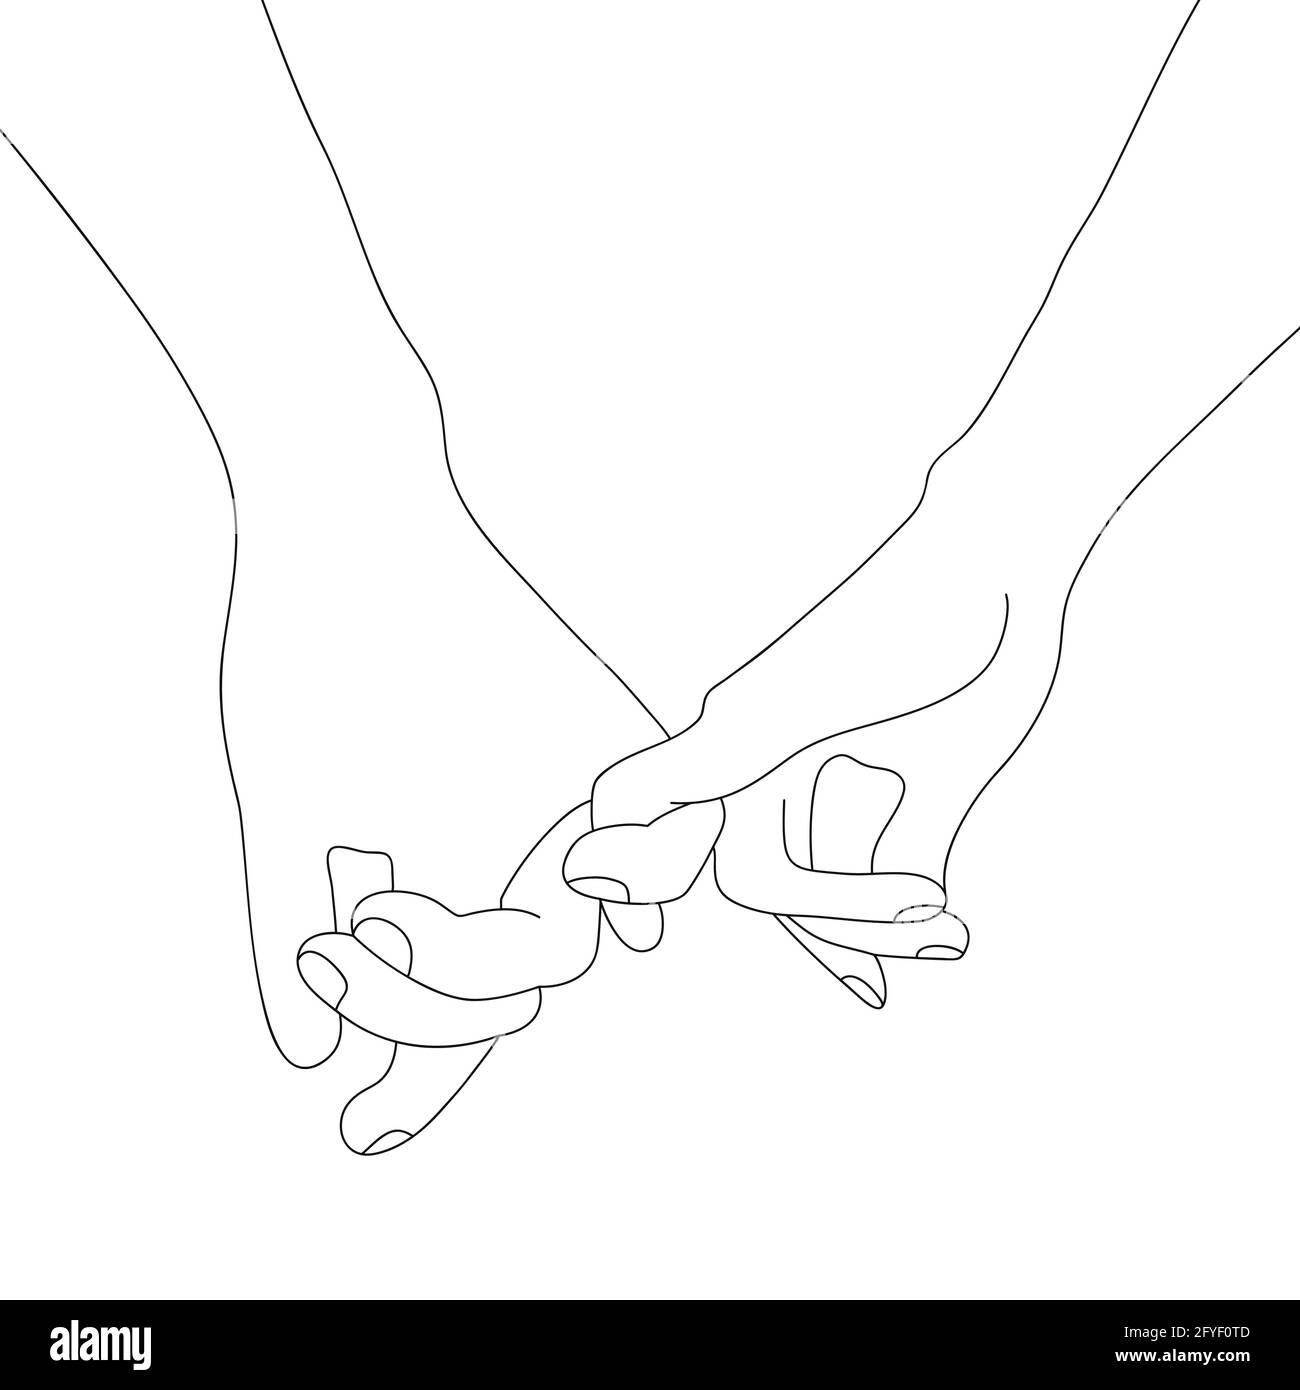 Disegno vettoriale a mano di linea isolato su sfondo bianco. Donna e uomo che tengono insieme le mani con le dita. Illustrazione vettoriale. Illustrazione Vettoriale